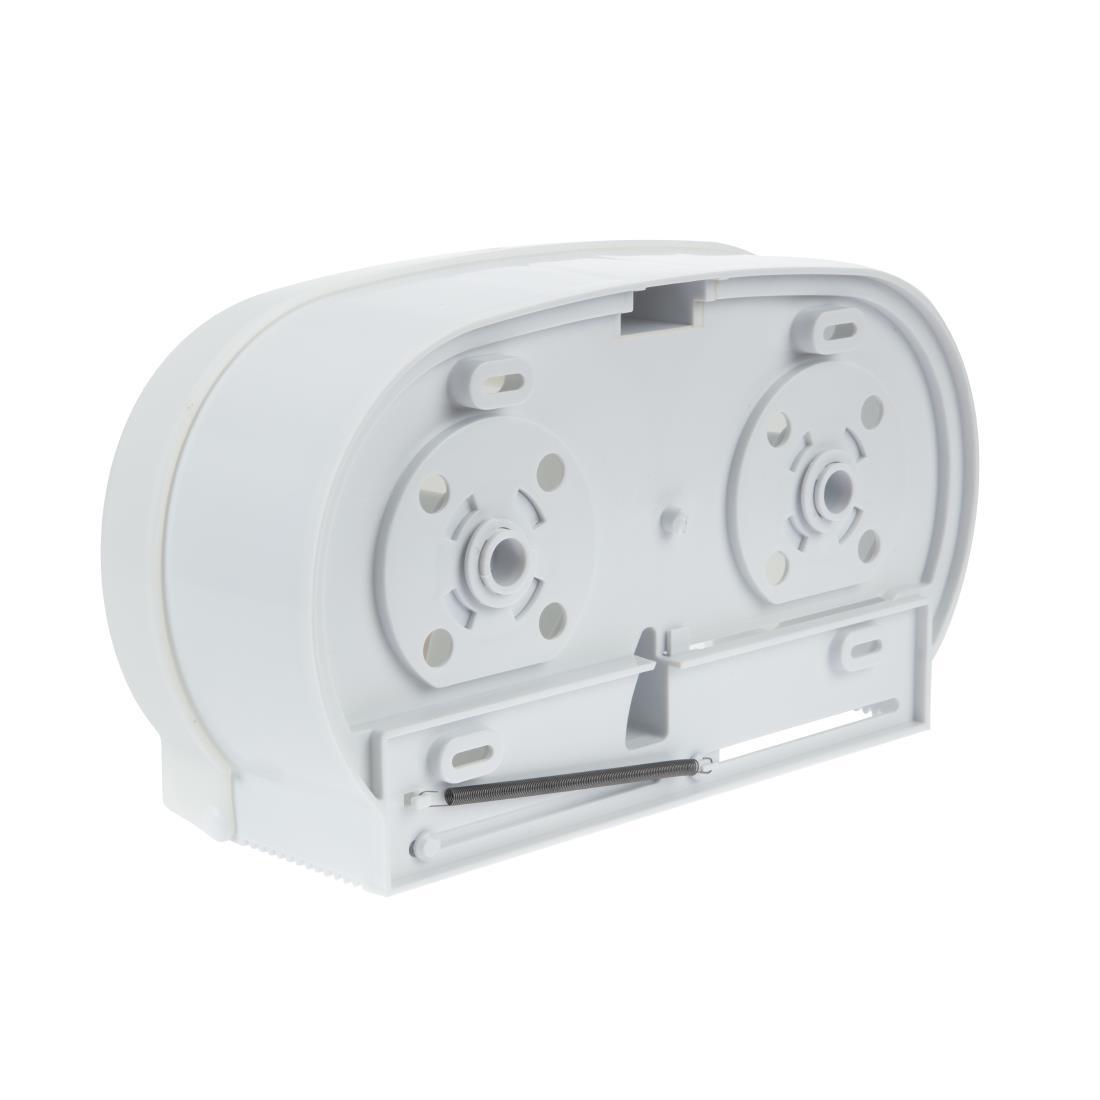 Jantex Micro Twin Toilet Roll Dispenser - GL062  - 2